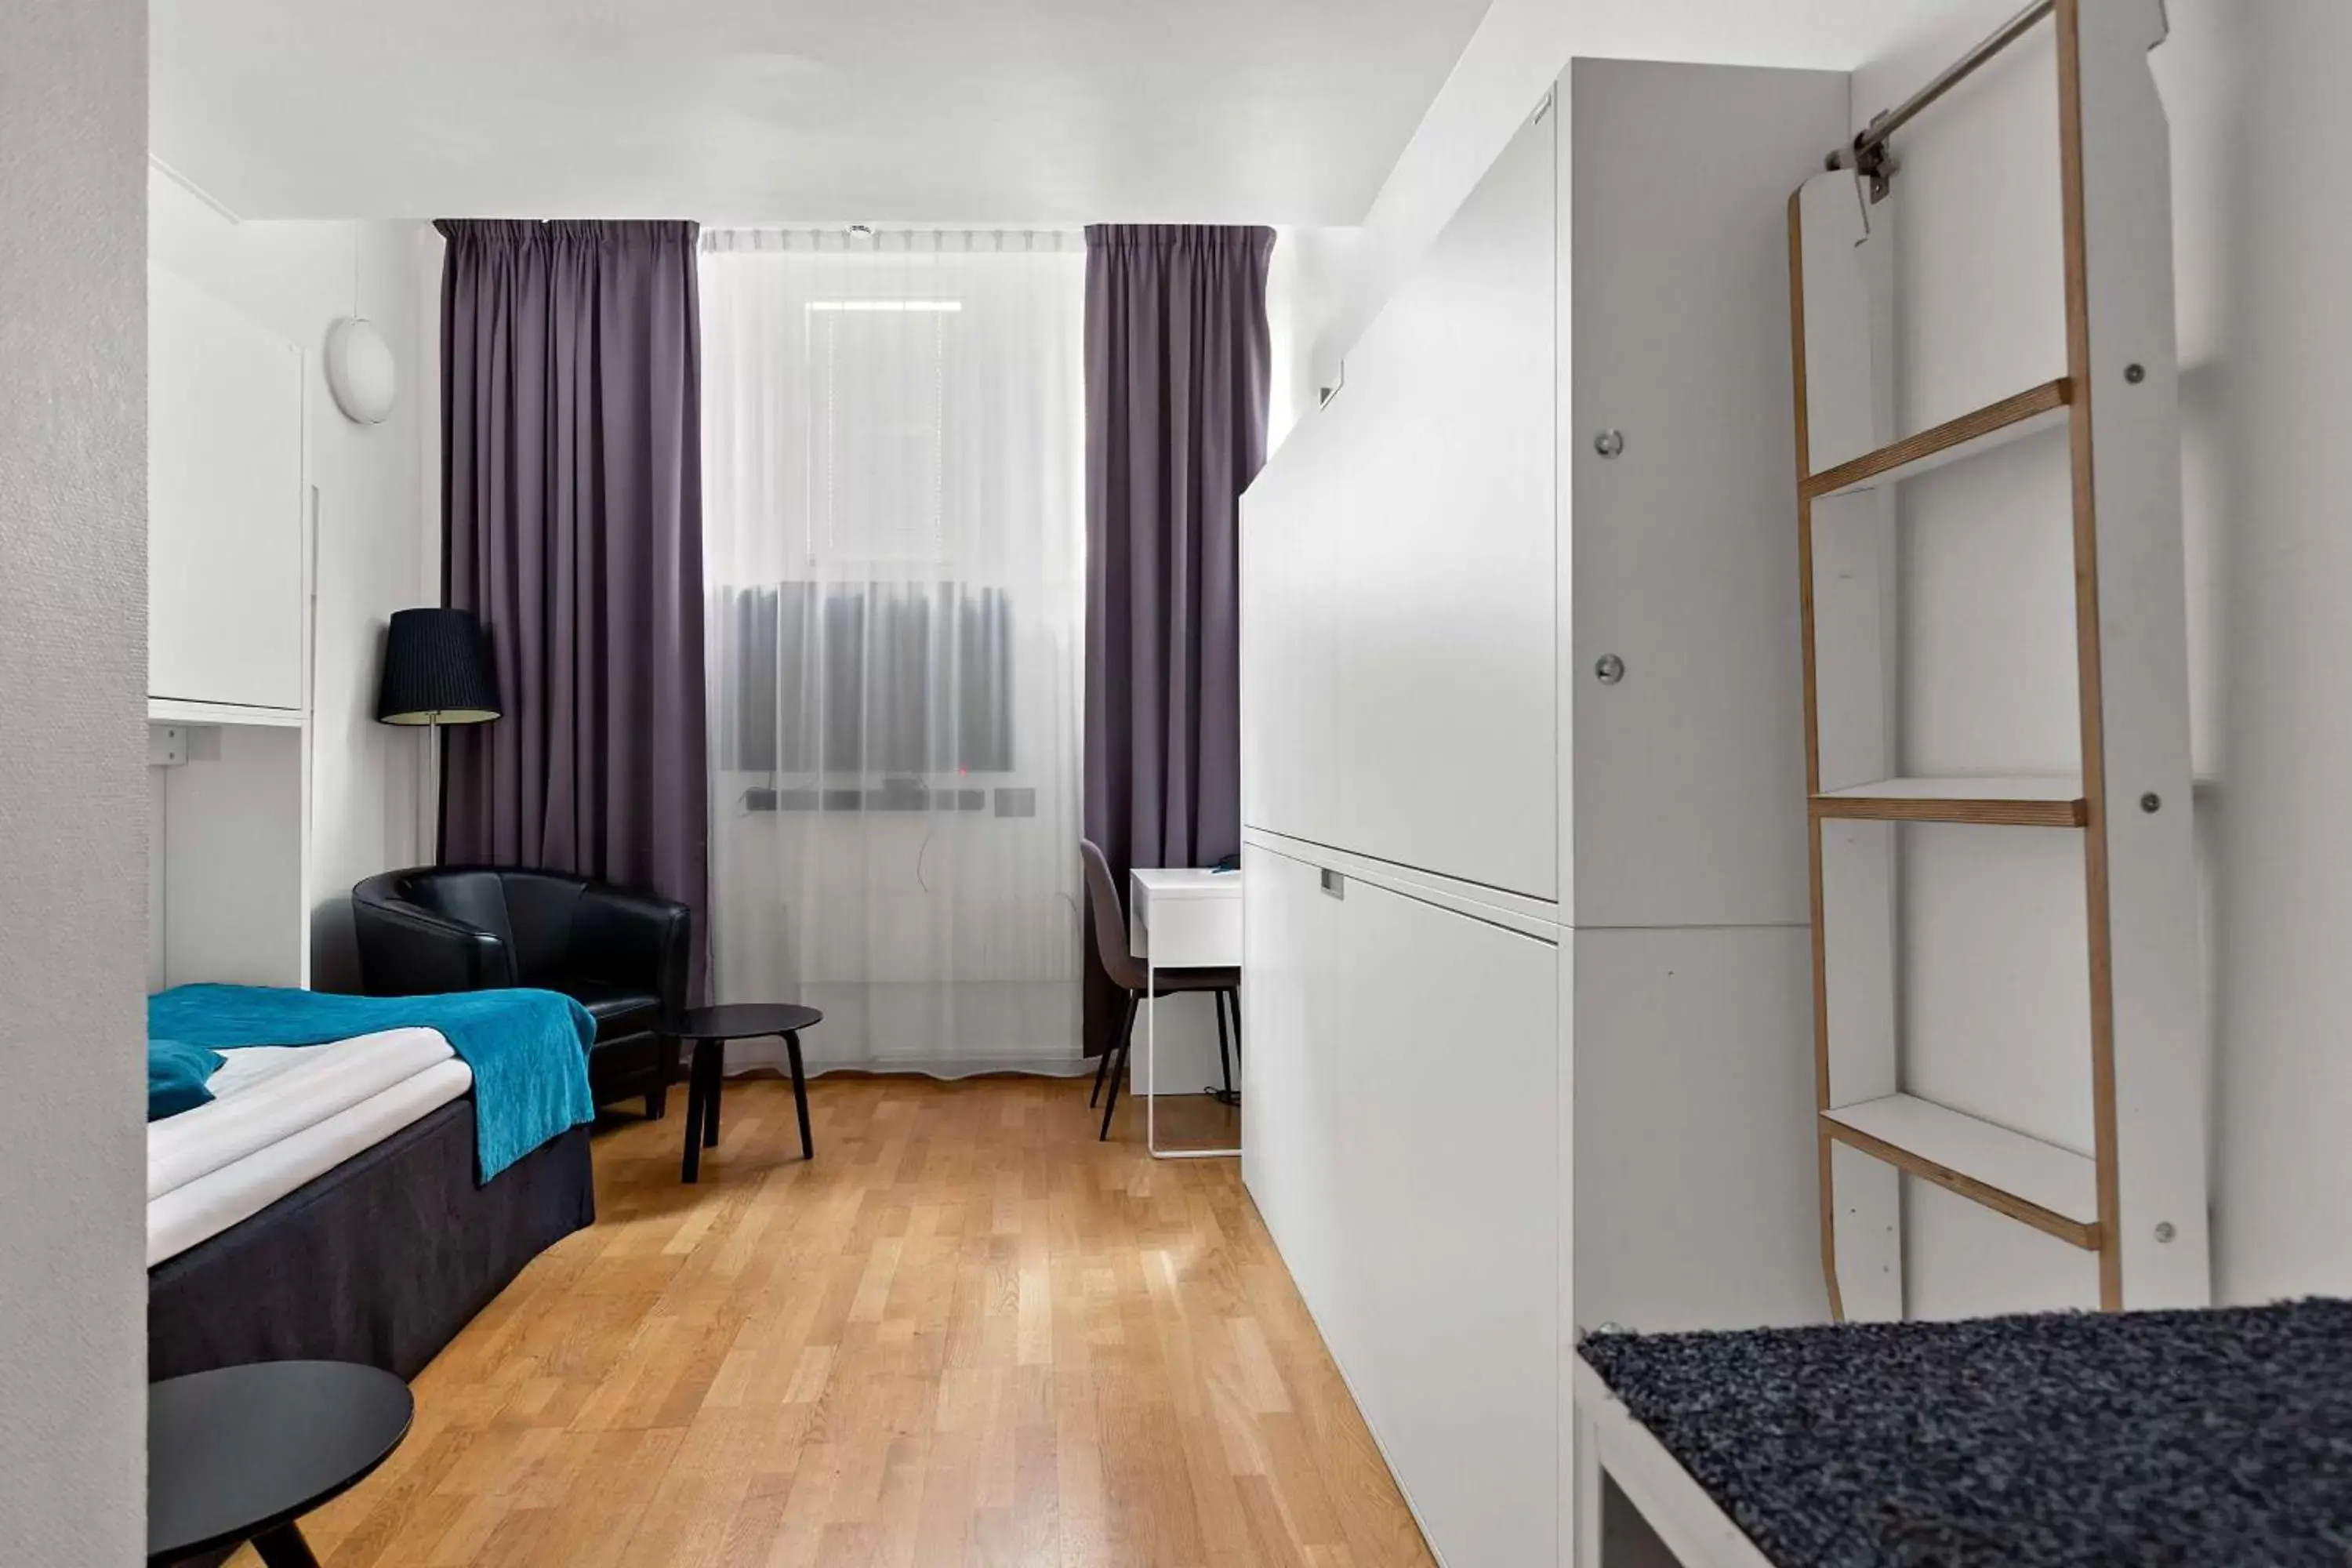 Bedroom, Seating Area in Best Western Kom Hotel Stockholm